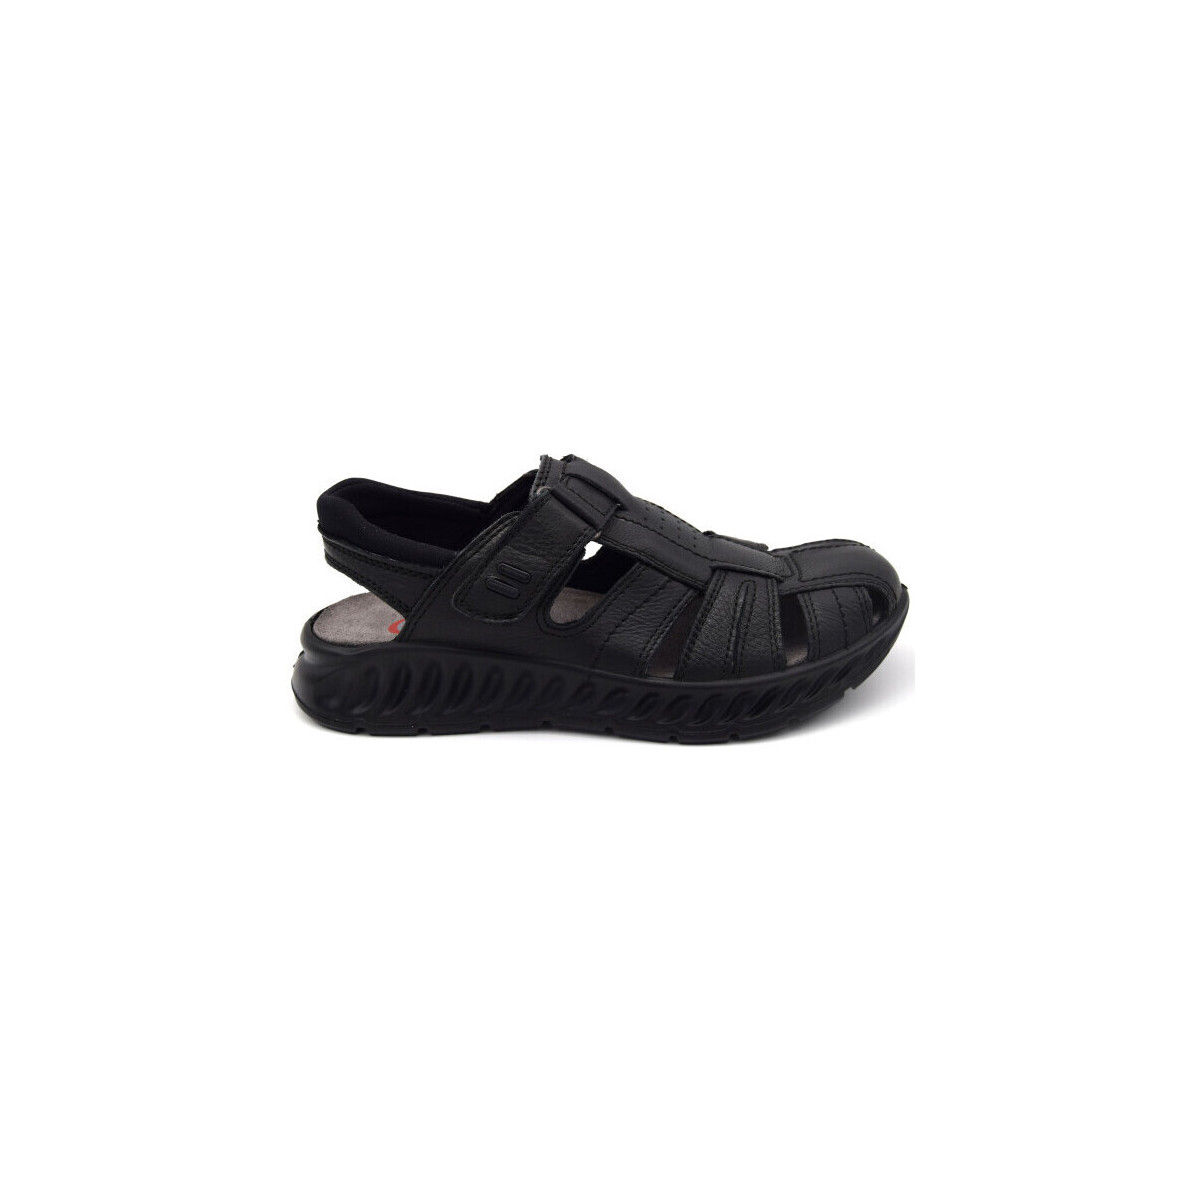 Chaussures Homme Sandales et Nu-pieds Ara 11-38035-01 Noir